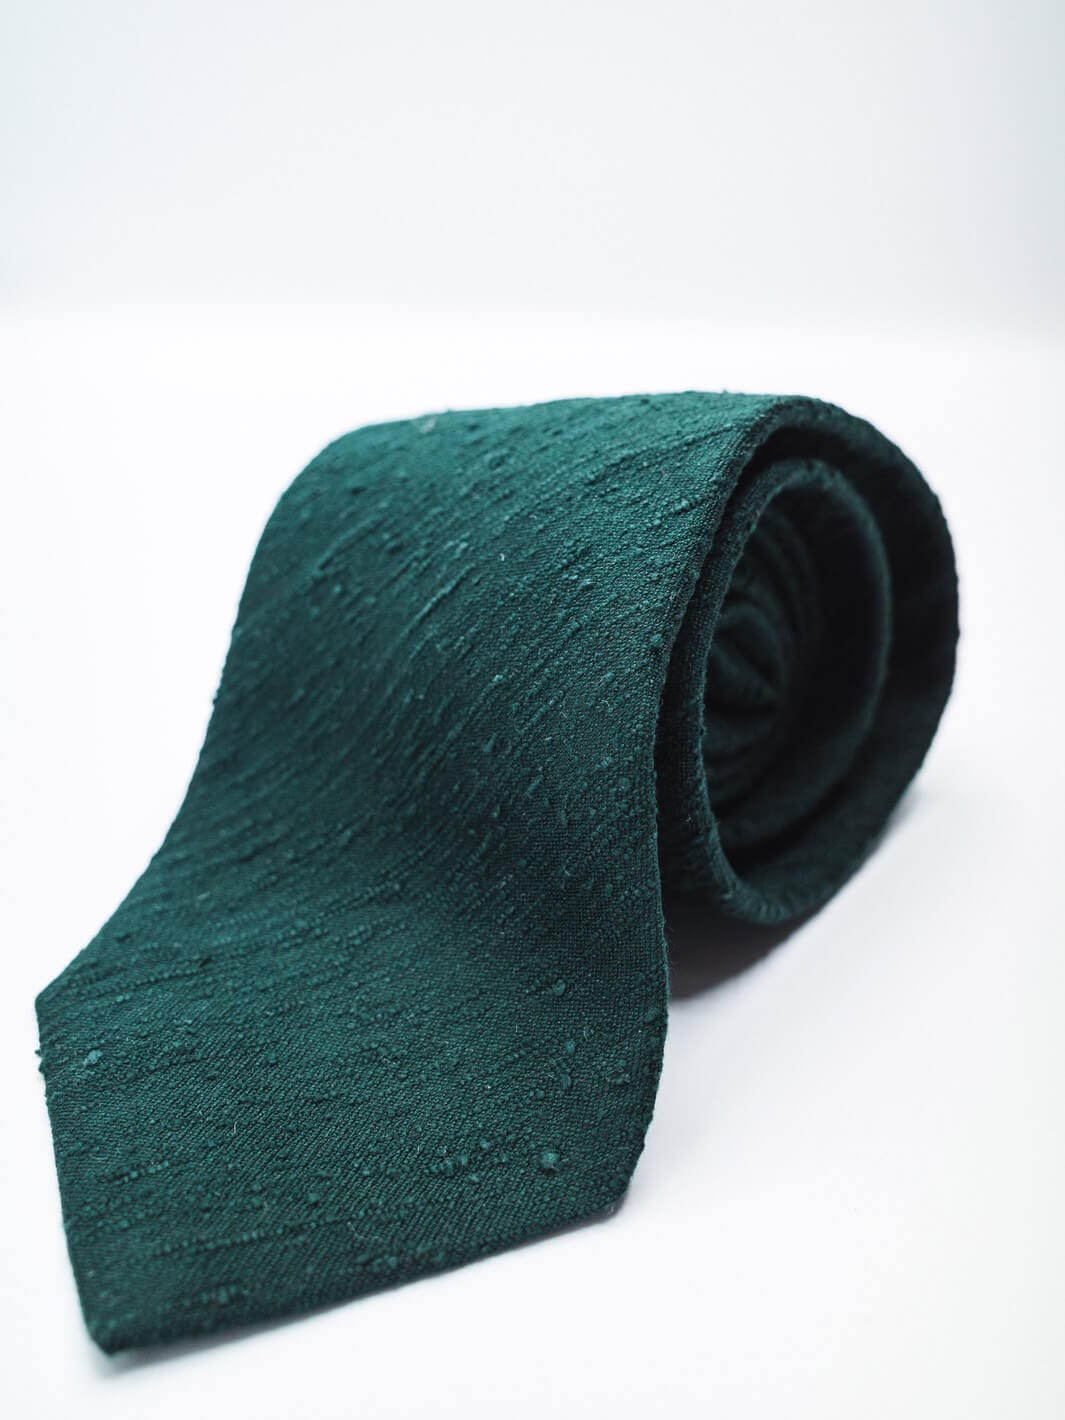 Paolo Albizzati Tie Silk Shantung Tie - Gable Green